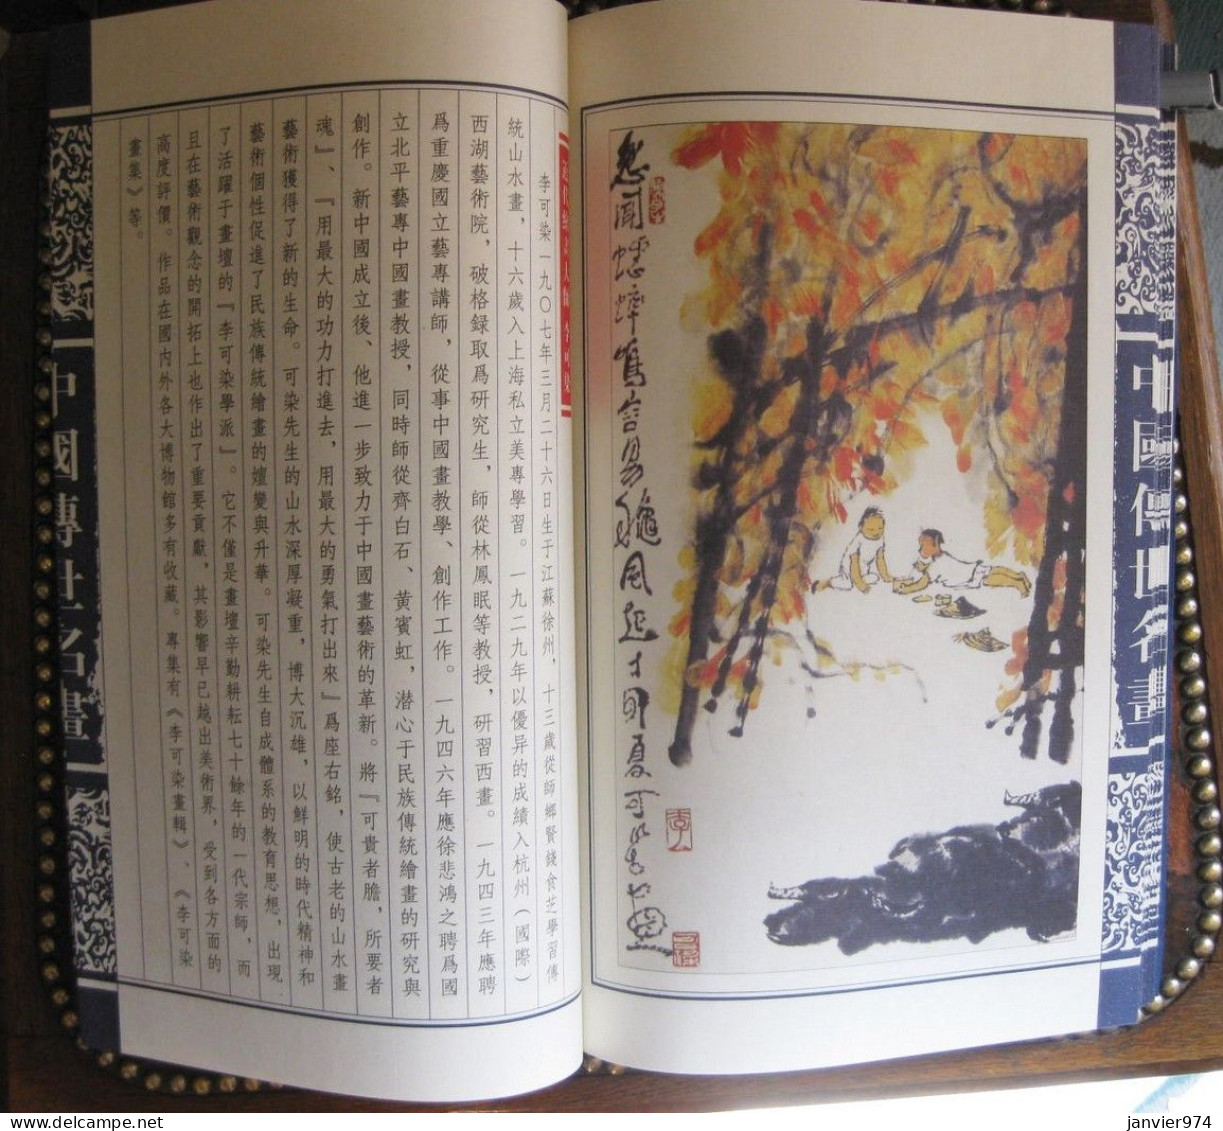 Coffret et livre de lithographies ou dessins de 7 grands peintres chinois pour 35 timbres chinois Tres rare